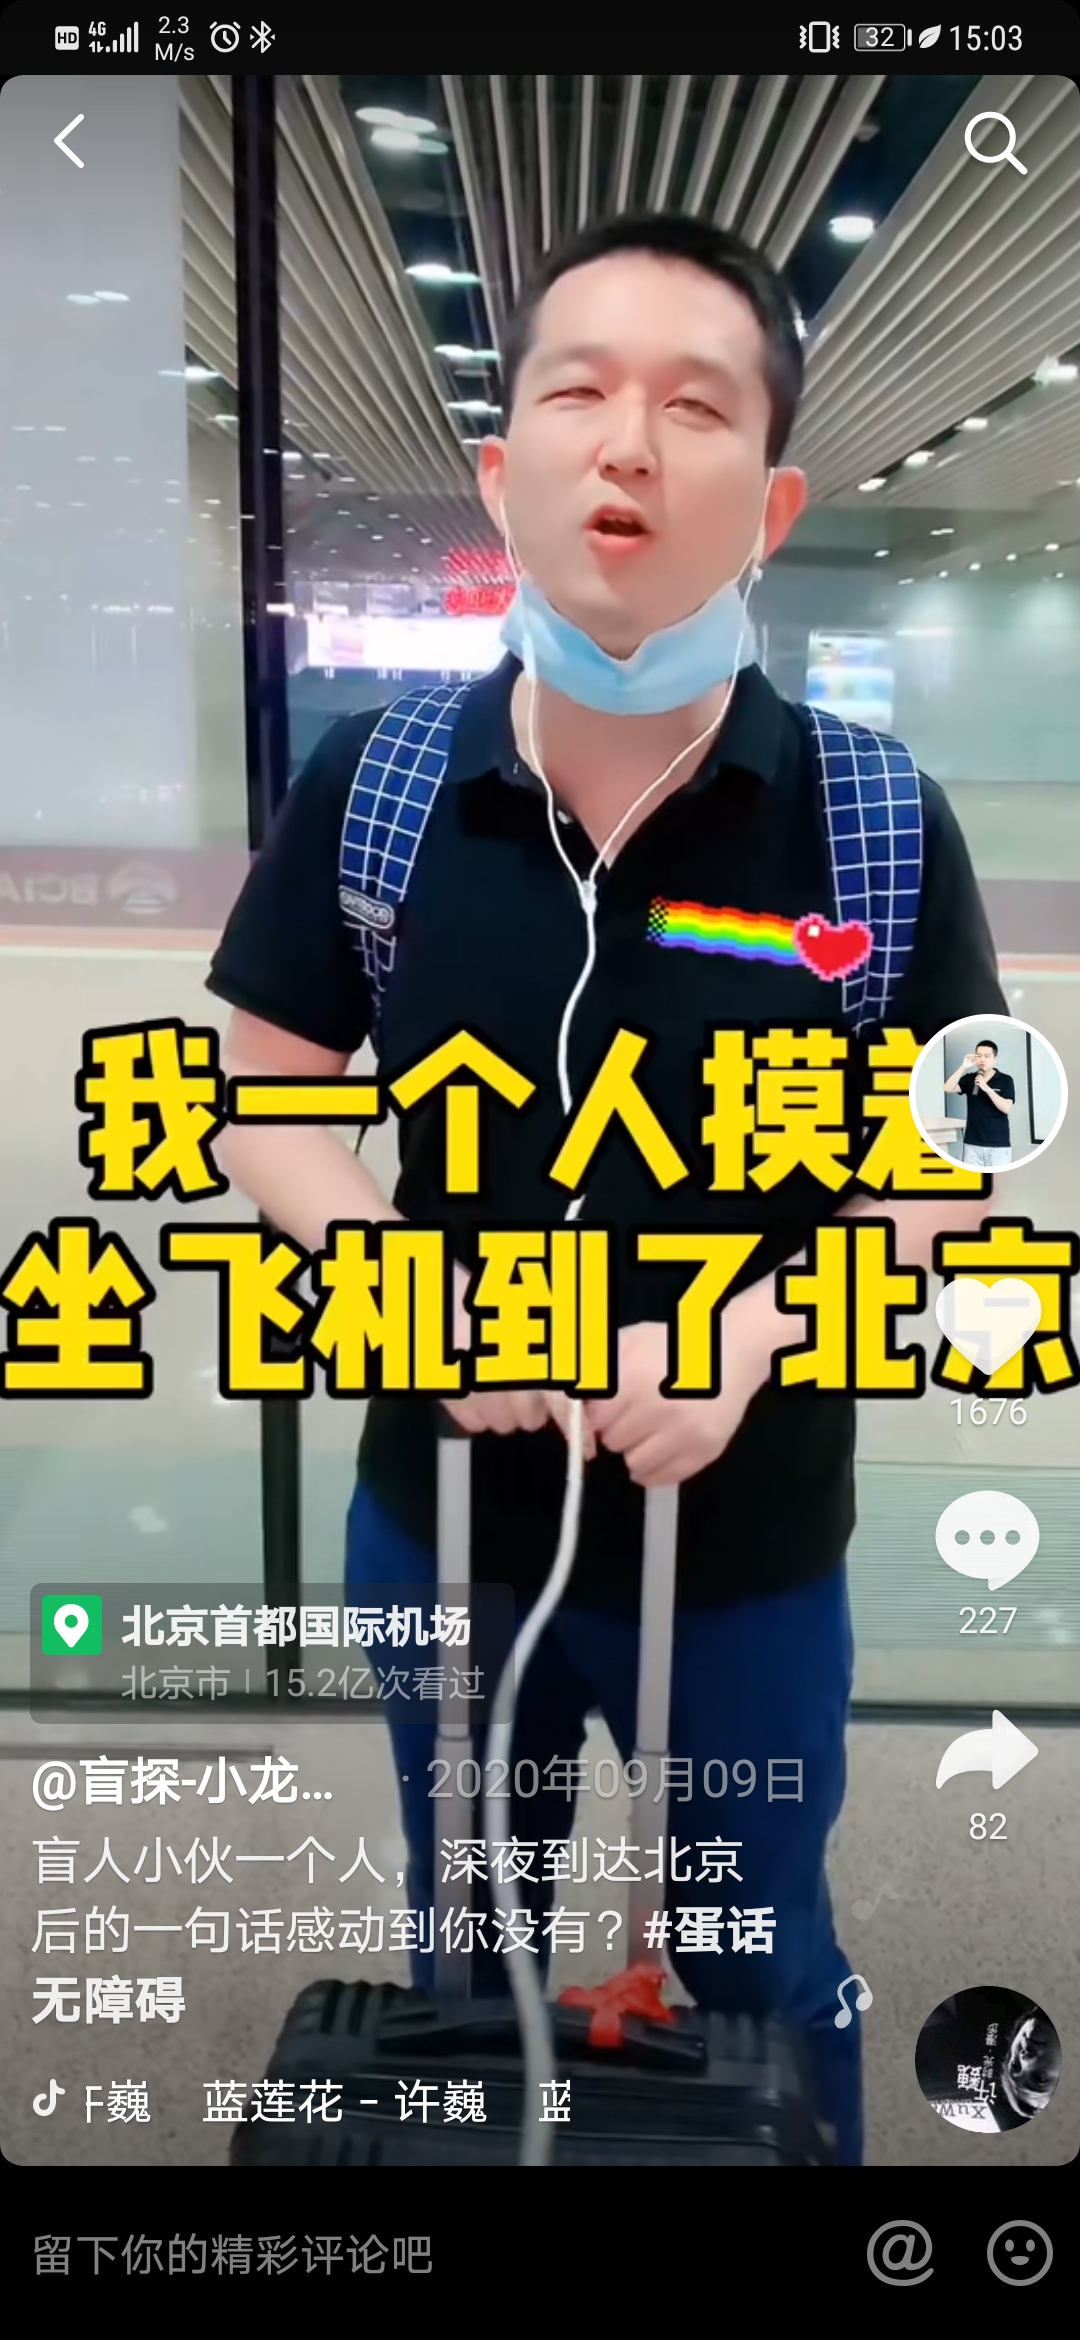 图：视障博主@盲探-小龙蛋 因工作出差独自乘飞机去北京